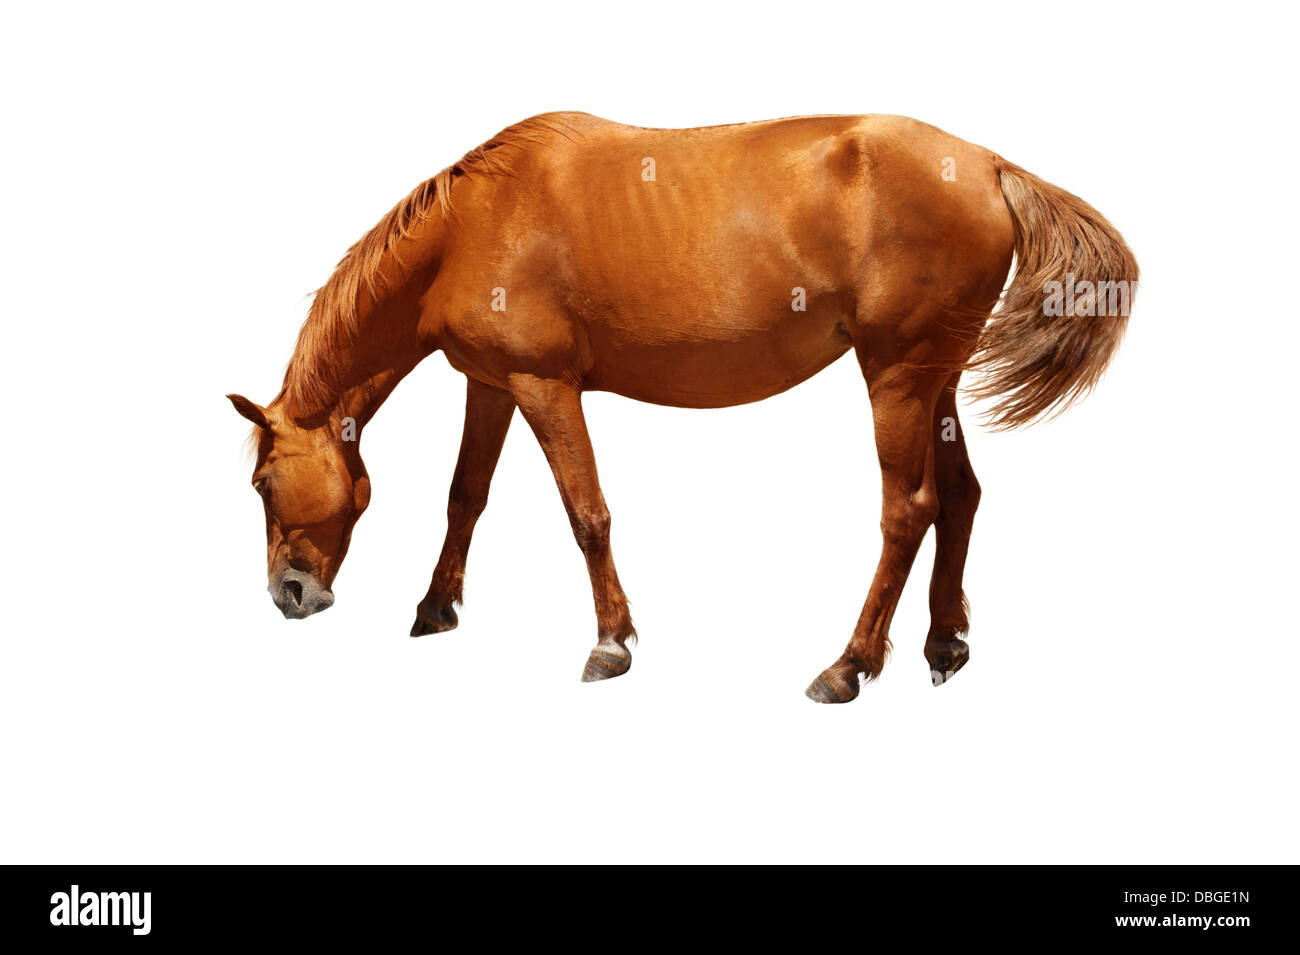 Cavallo marrone in piedi con la testa in giù come mangiare o bere acqua. Isolato su sfondo bianco Foto Stock